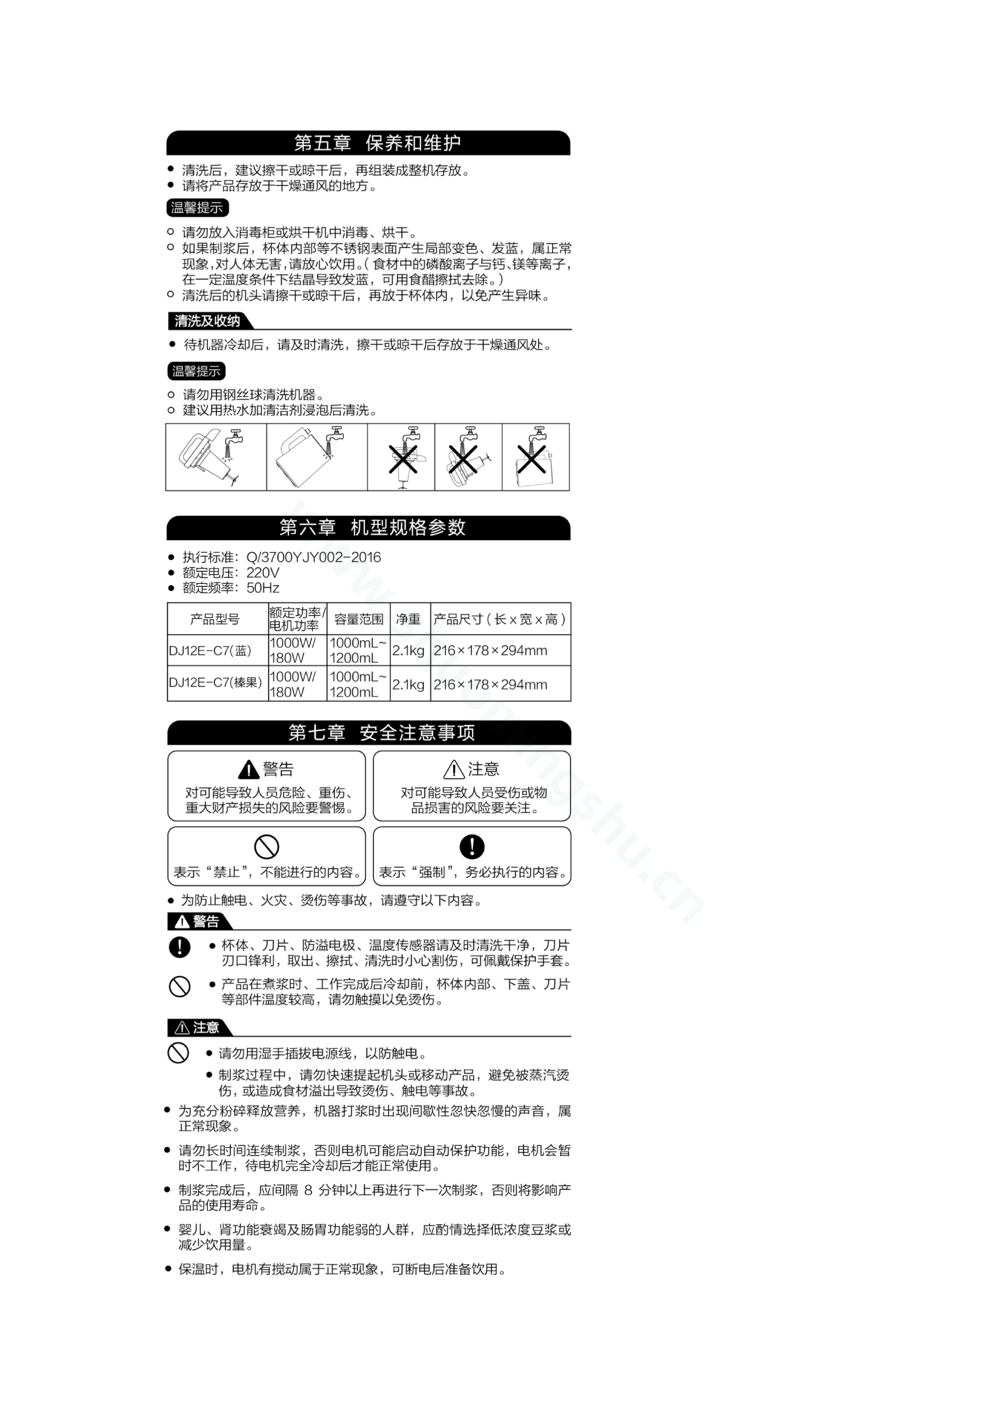 九阳豆浆机DJ12E-C7说明书第4页